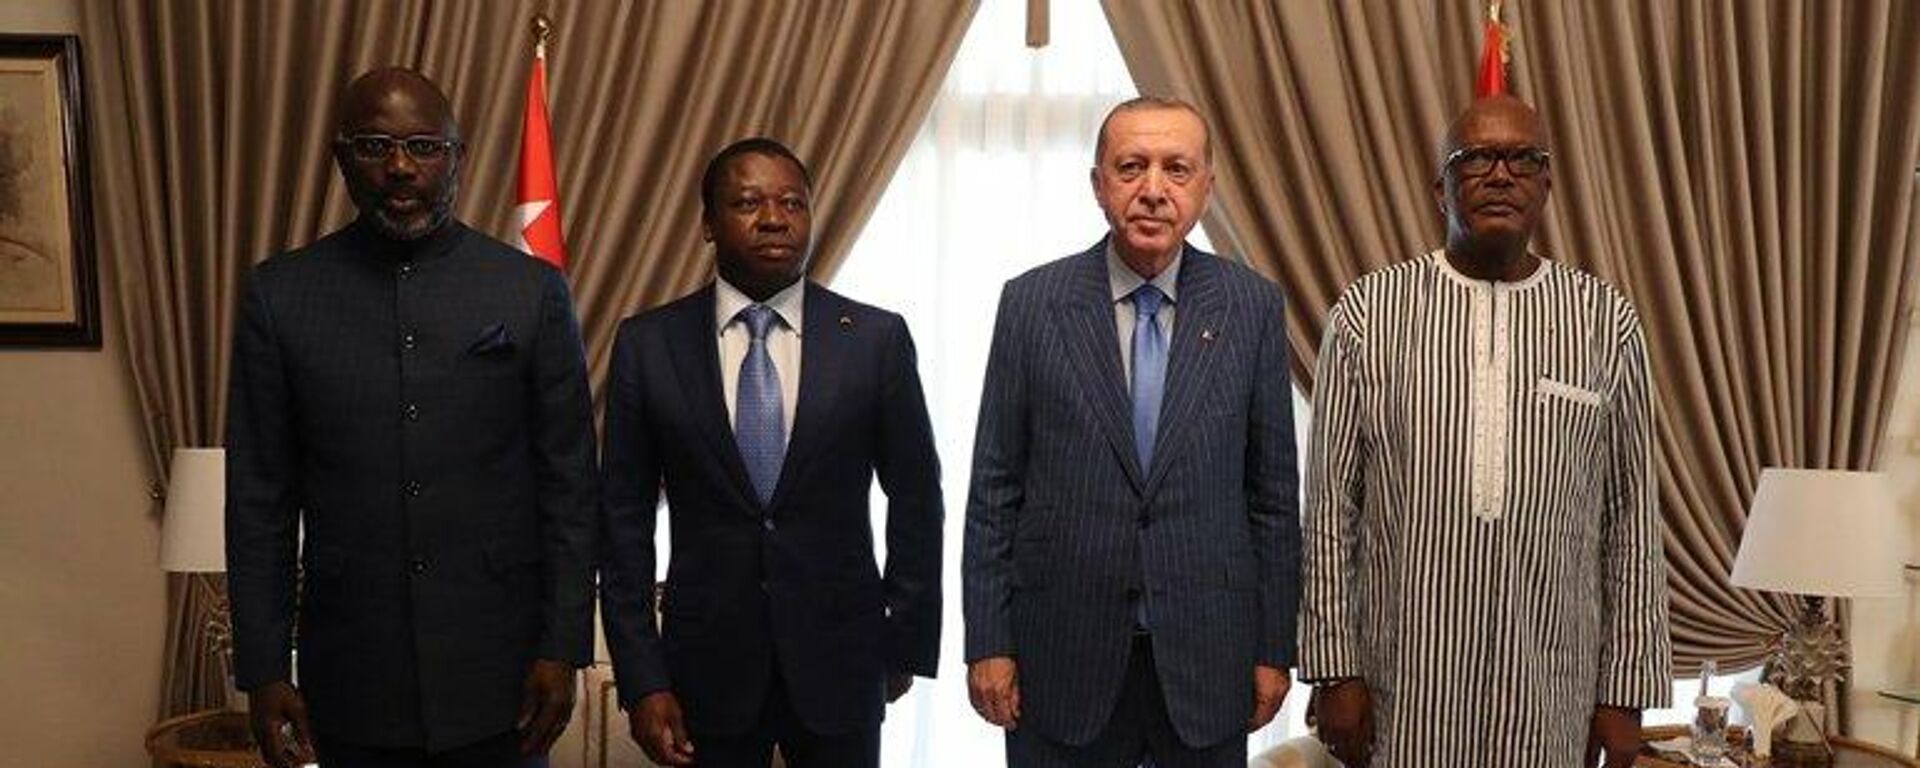 Cumhurbaşkanı Erdoğan'ın Afrika'daki görüşmelerinin ardından dört liderin imzasıyla bildiri yayımlandı. Bildiride IŞİD ve FETÖ dahil terörle mücadelede iş birliği vurgusu yapıldı, uluslararası topluma salgınla mücadelede vaatlerine uyma çağrısında bulunuldu. - Sputnik Türkiye, 1920, 19.10.2021